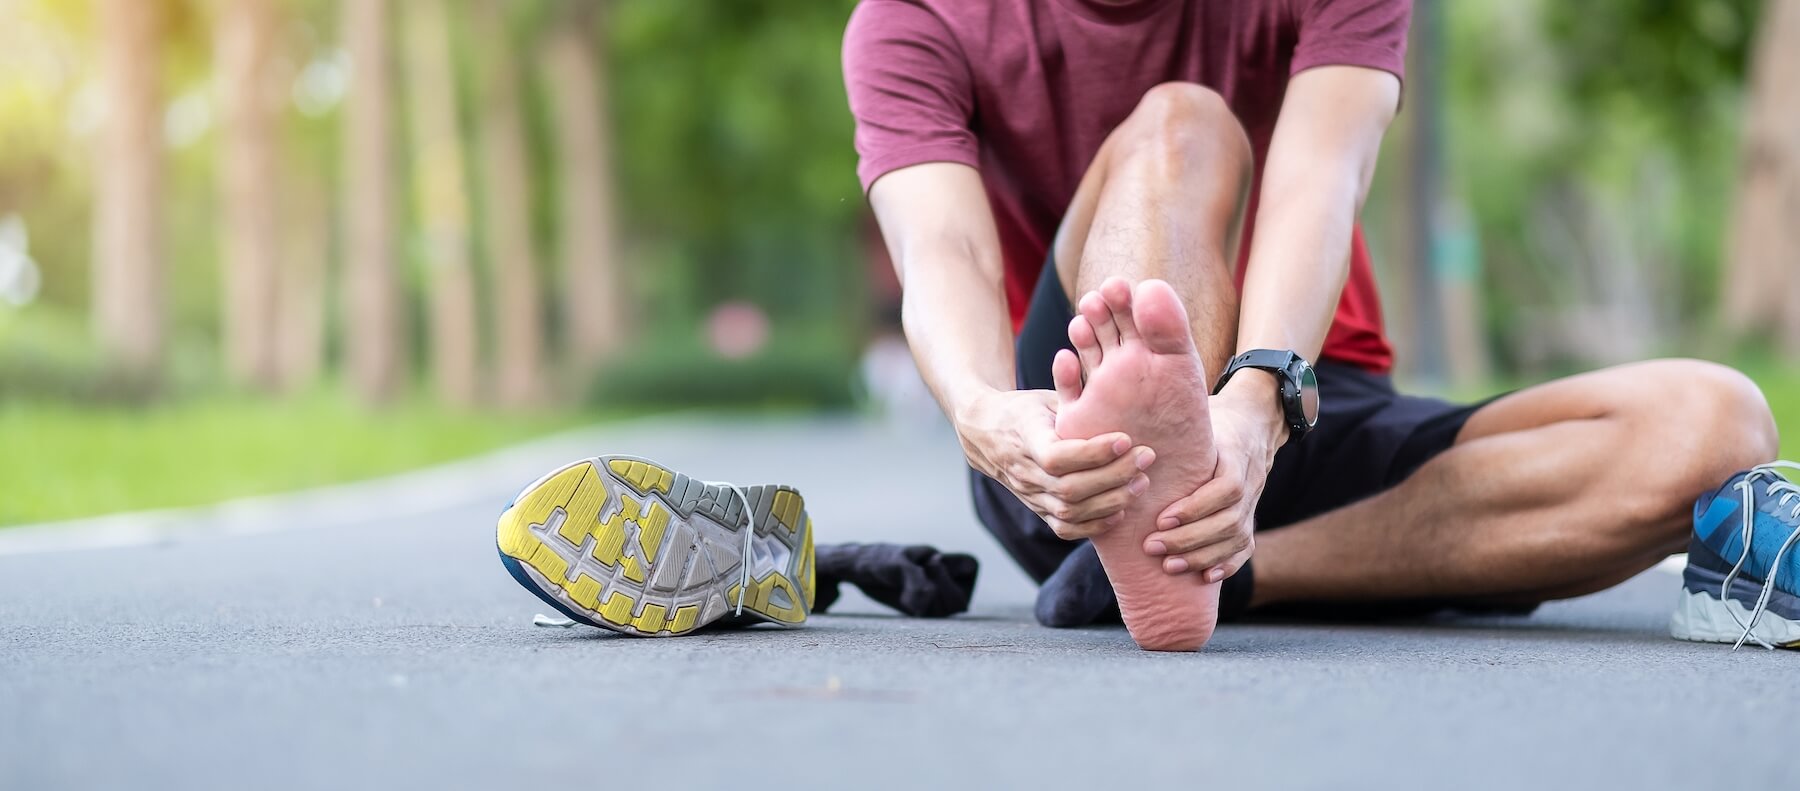 avoid injury when running